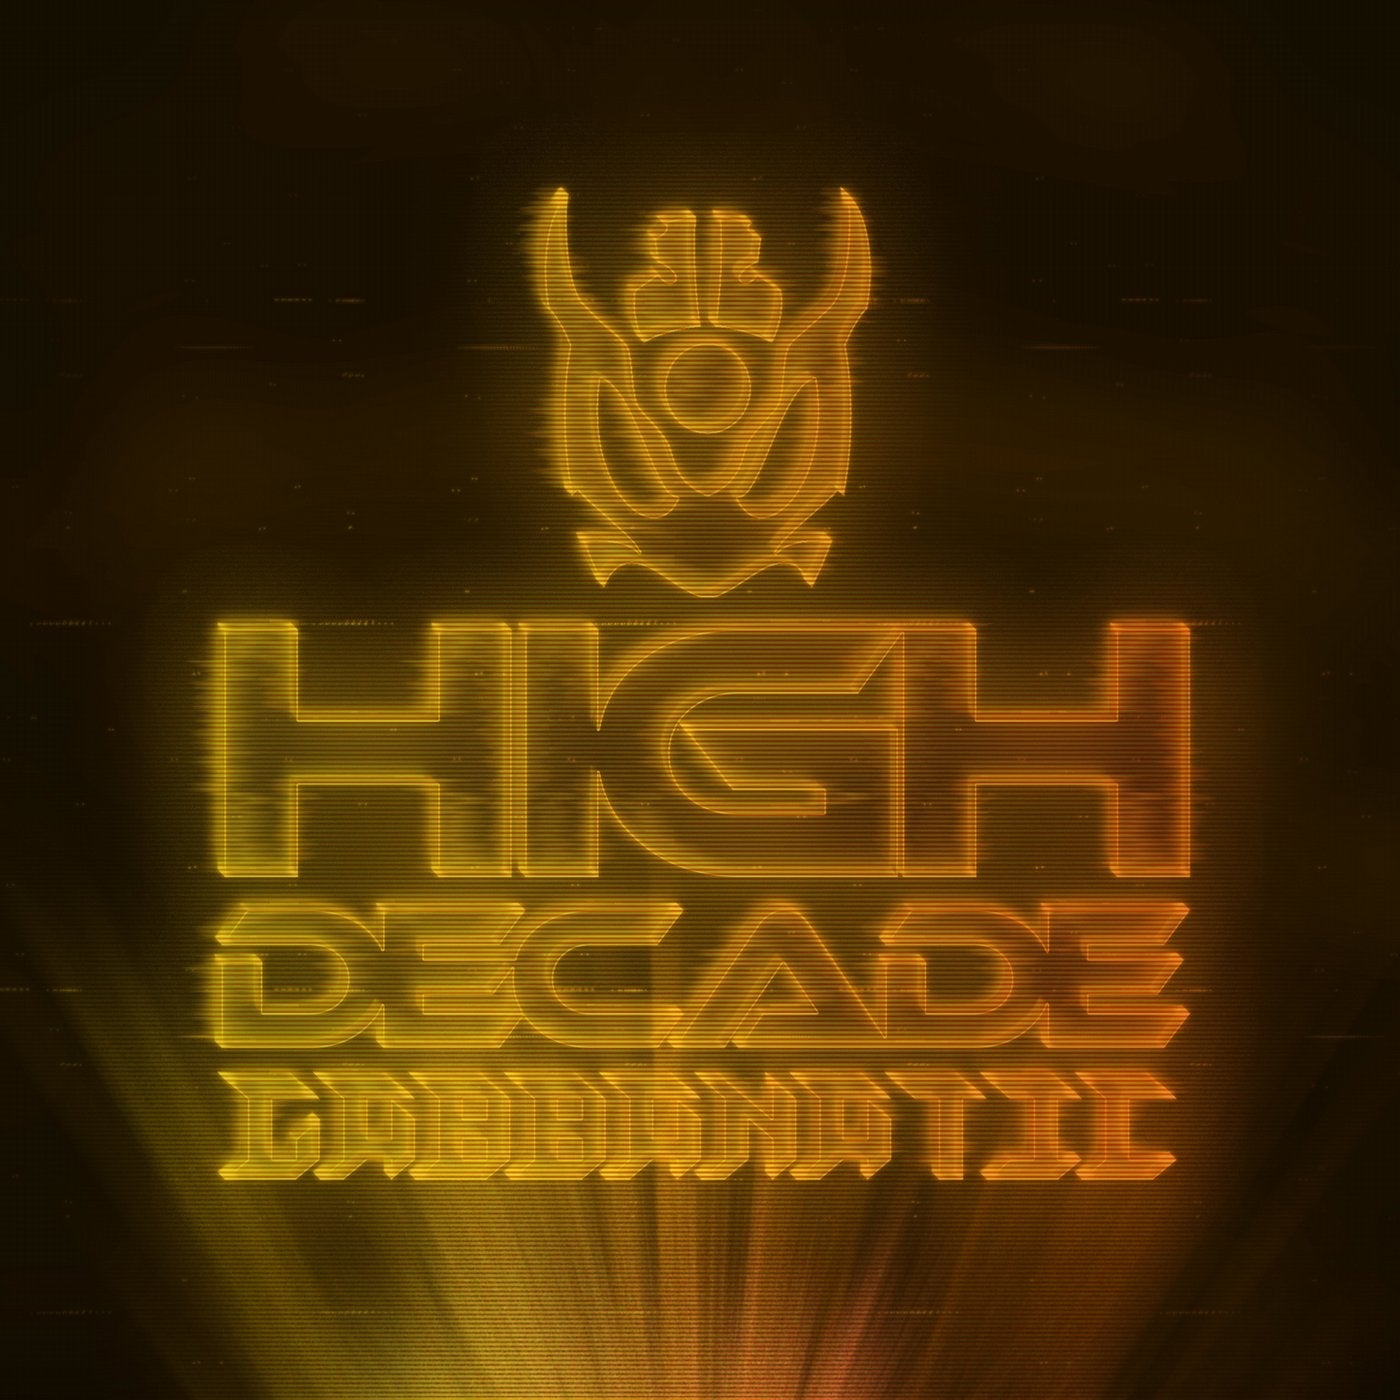 High Decade